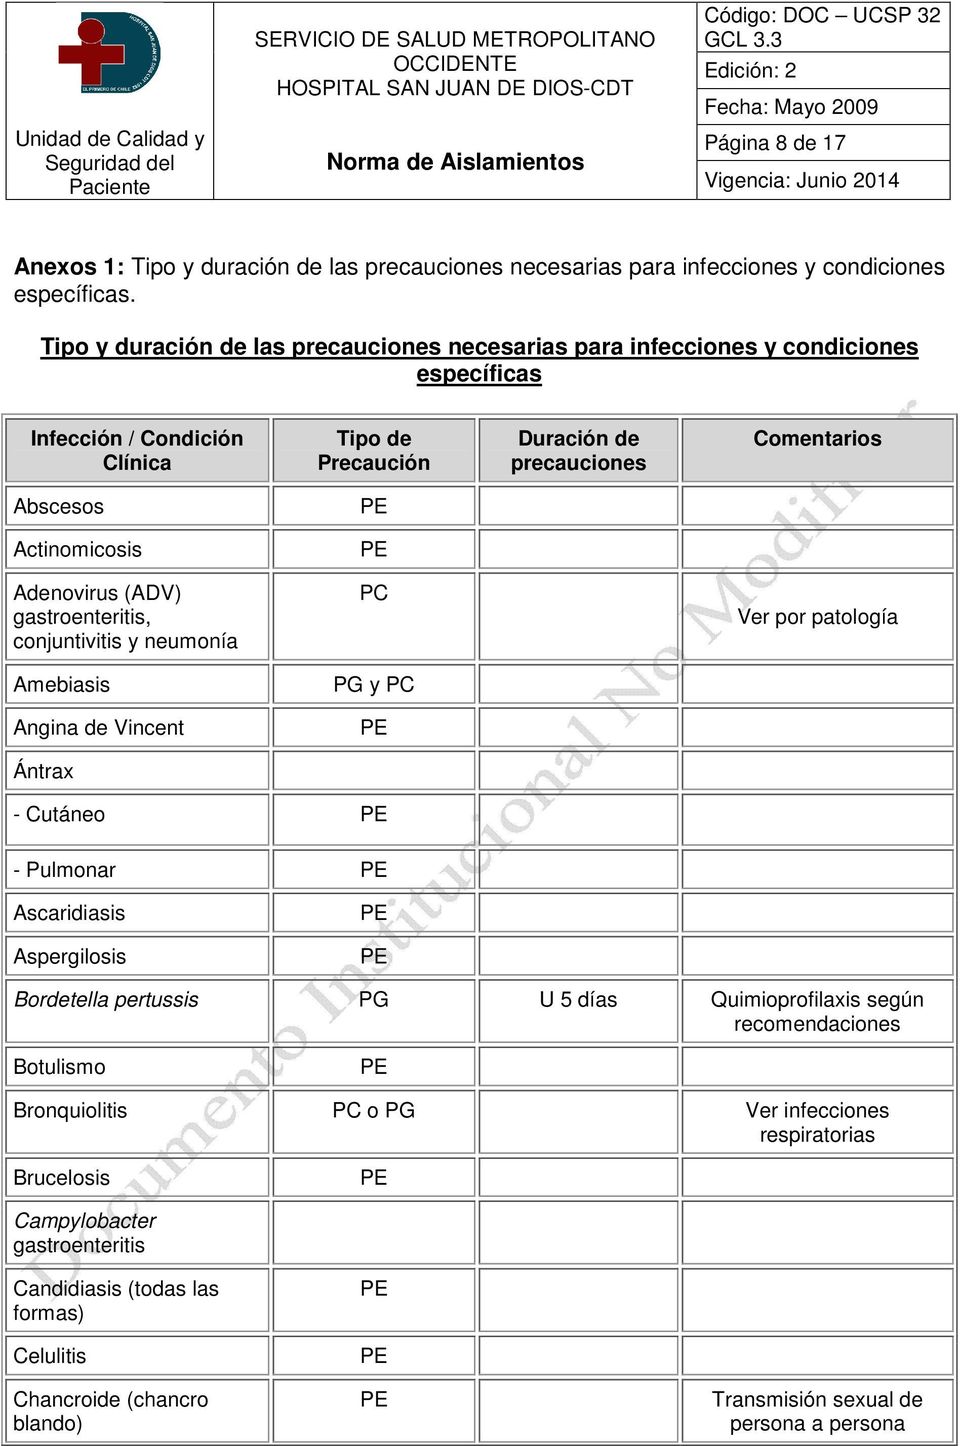 Actinomicosis Adenovirus (ADV) gastroenteritis, conjuntivitis y neumonía PC Ver por patología Amebiasis PG y PC Angina de Vincent Ántrax - Cutáneo - Pulmonar Ascaridiasis Aspergilosis